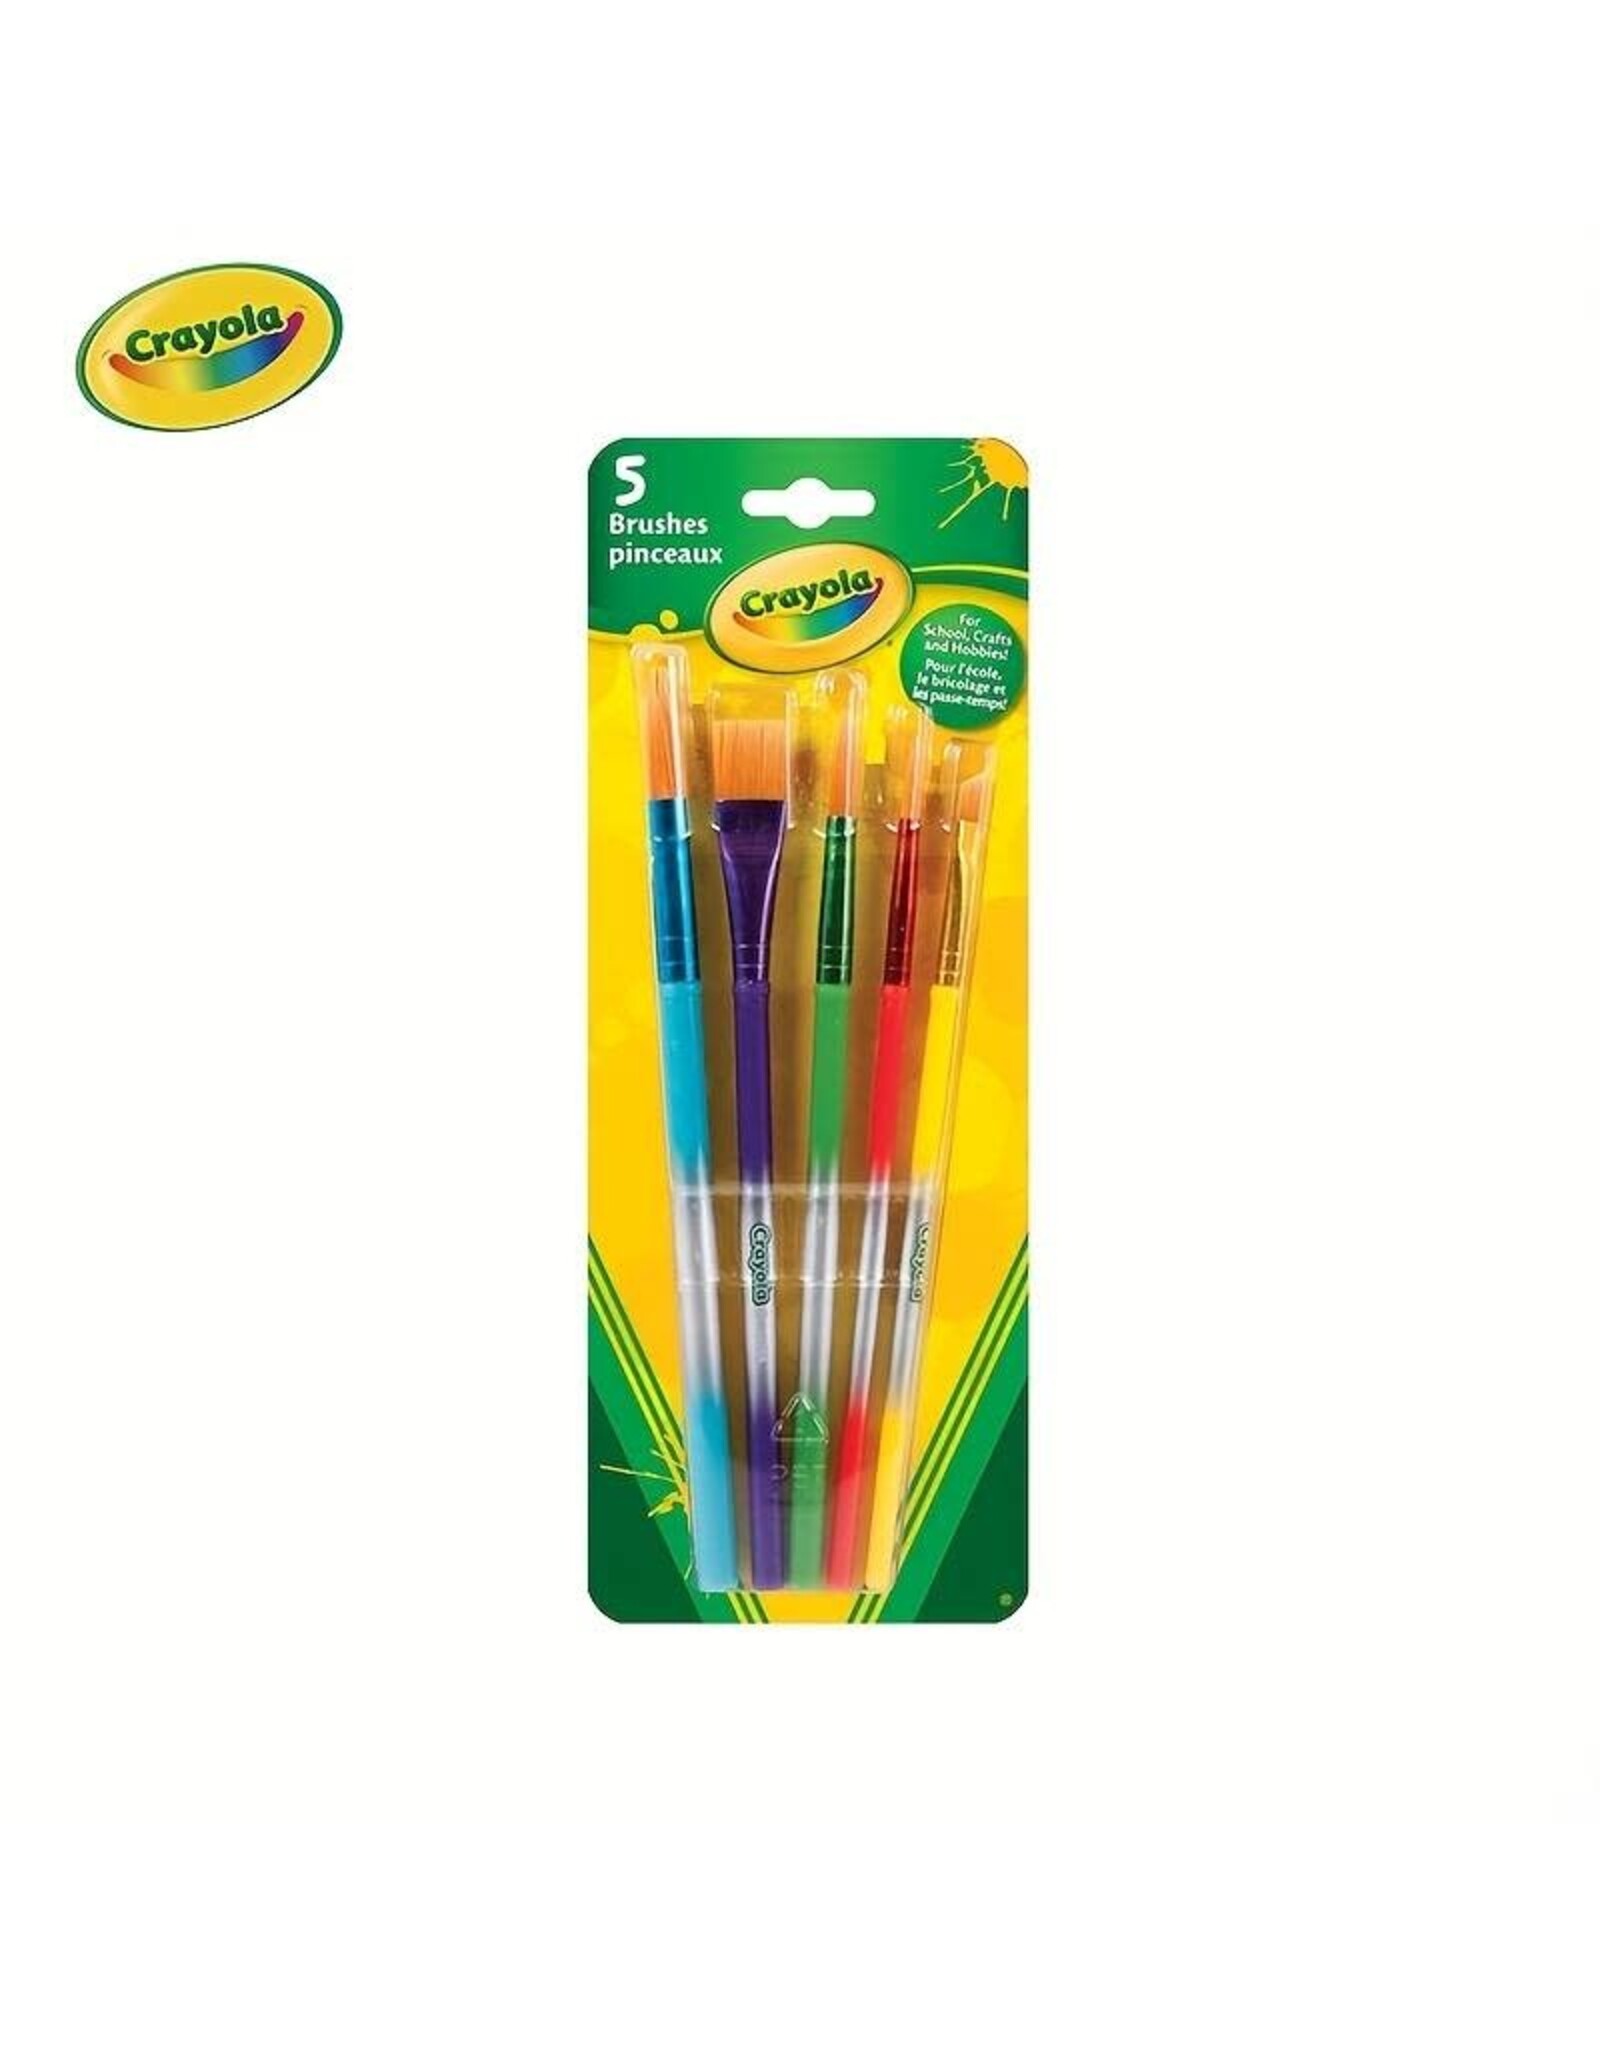 Crayola 5 ct. Paint Brush Set